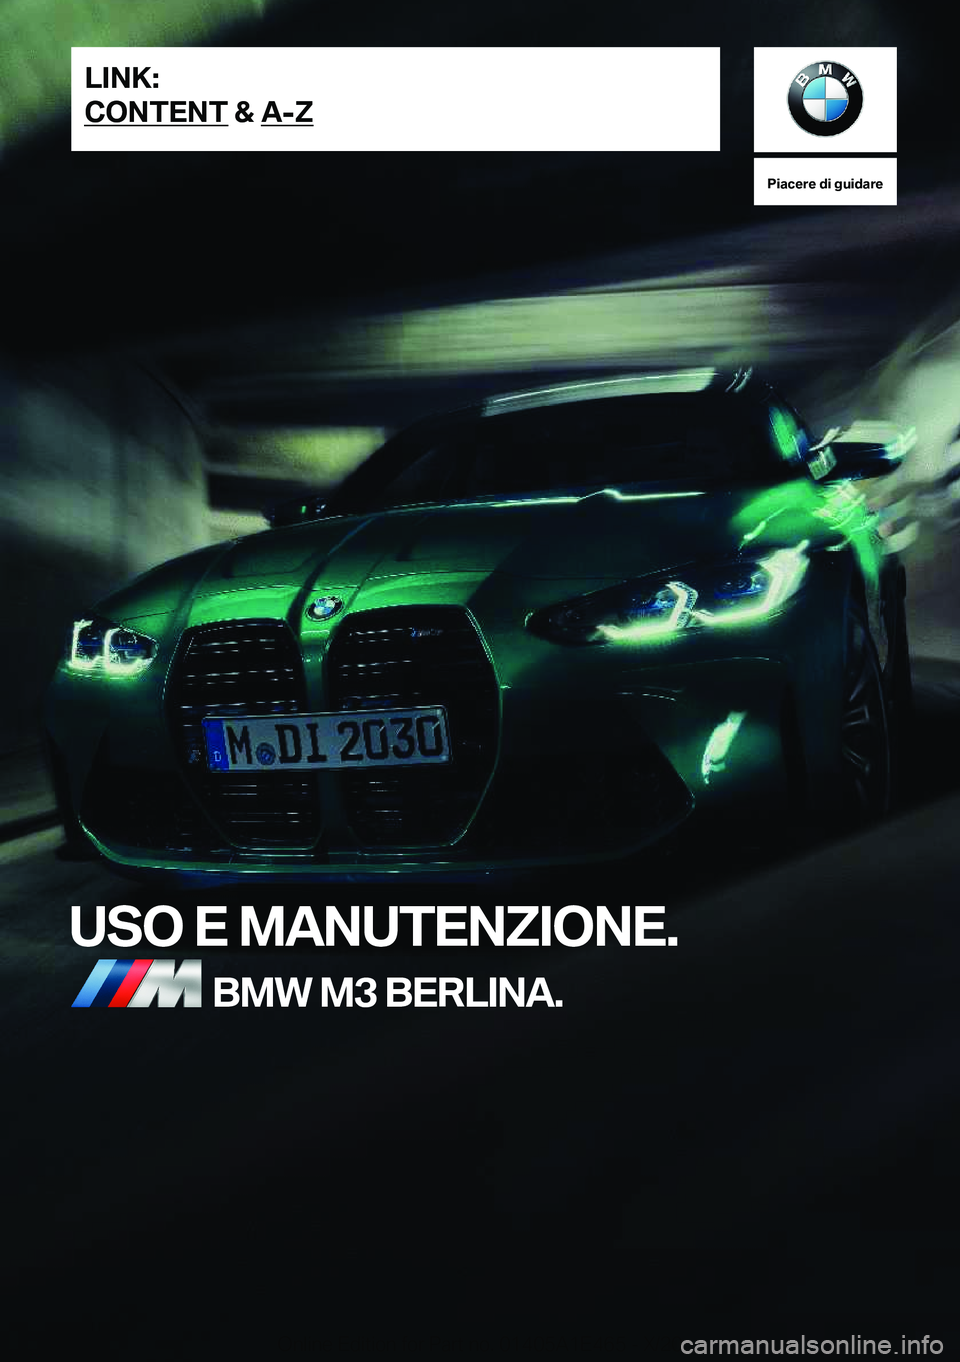 BMW M3 2021  Libretti Di Uso E manutenzione (in Italian) �P�i�a�c�e�r�e��d�i��g�u�i�d�a�r�e
�U�S�O��E��M�A�N�U�T�E�N�Z�I�O�N�E�.�B�M�W��M�3��B�E�R�L�I�N�A�.�L�I�N�K�:
�C�O�N�T�E�N�T��&��A�-�Z�O�n�l�i�n�e��E�d�i�t�i�o�n��f�o�r��P�a�r�t��n�o�.��0